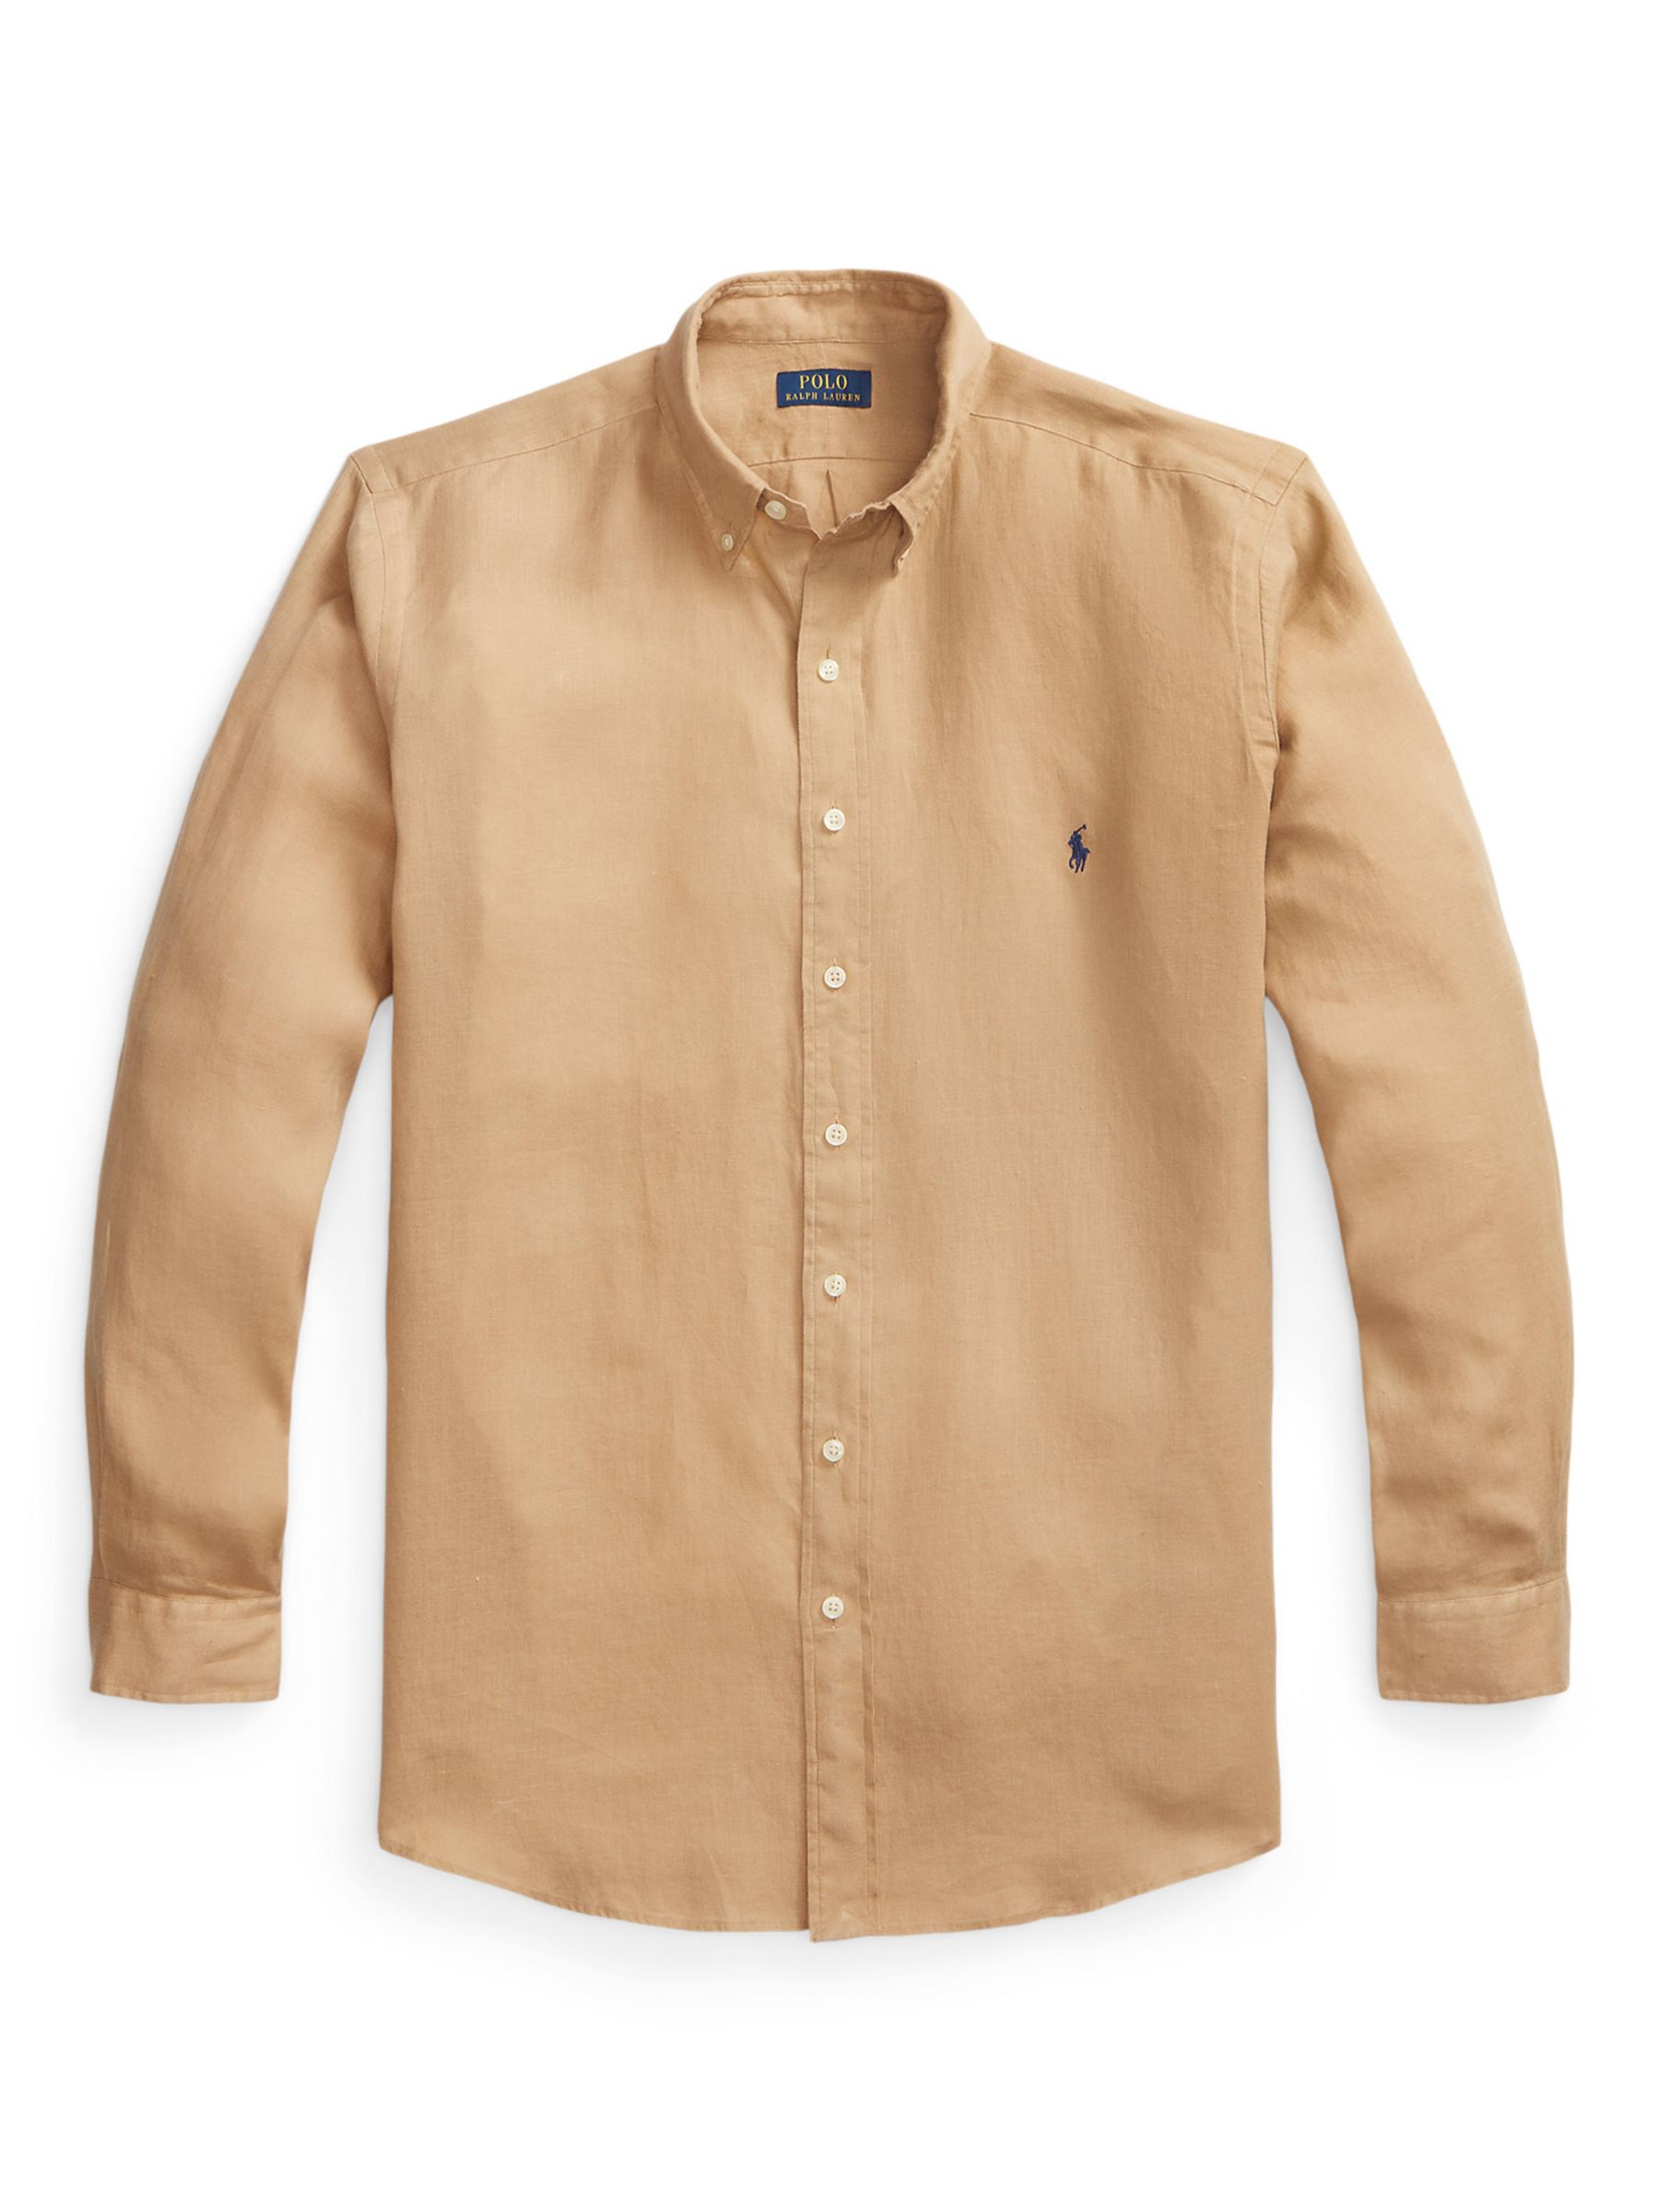 Ralph Lauren Big & Tall Long Sleeve Linen Shirt, Vintage Khaki, 1XB